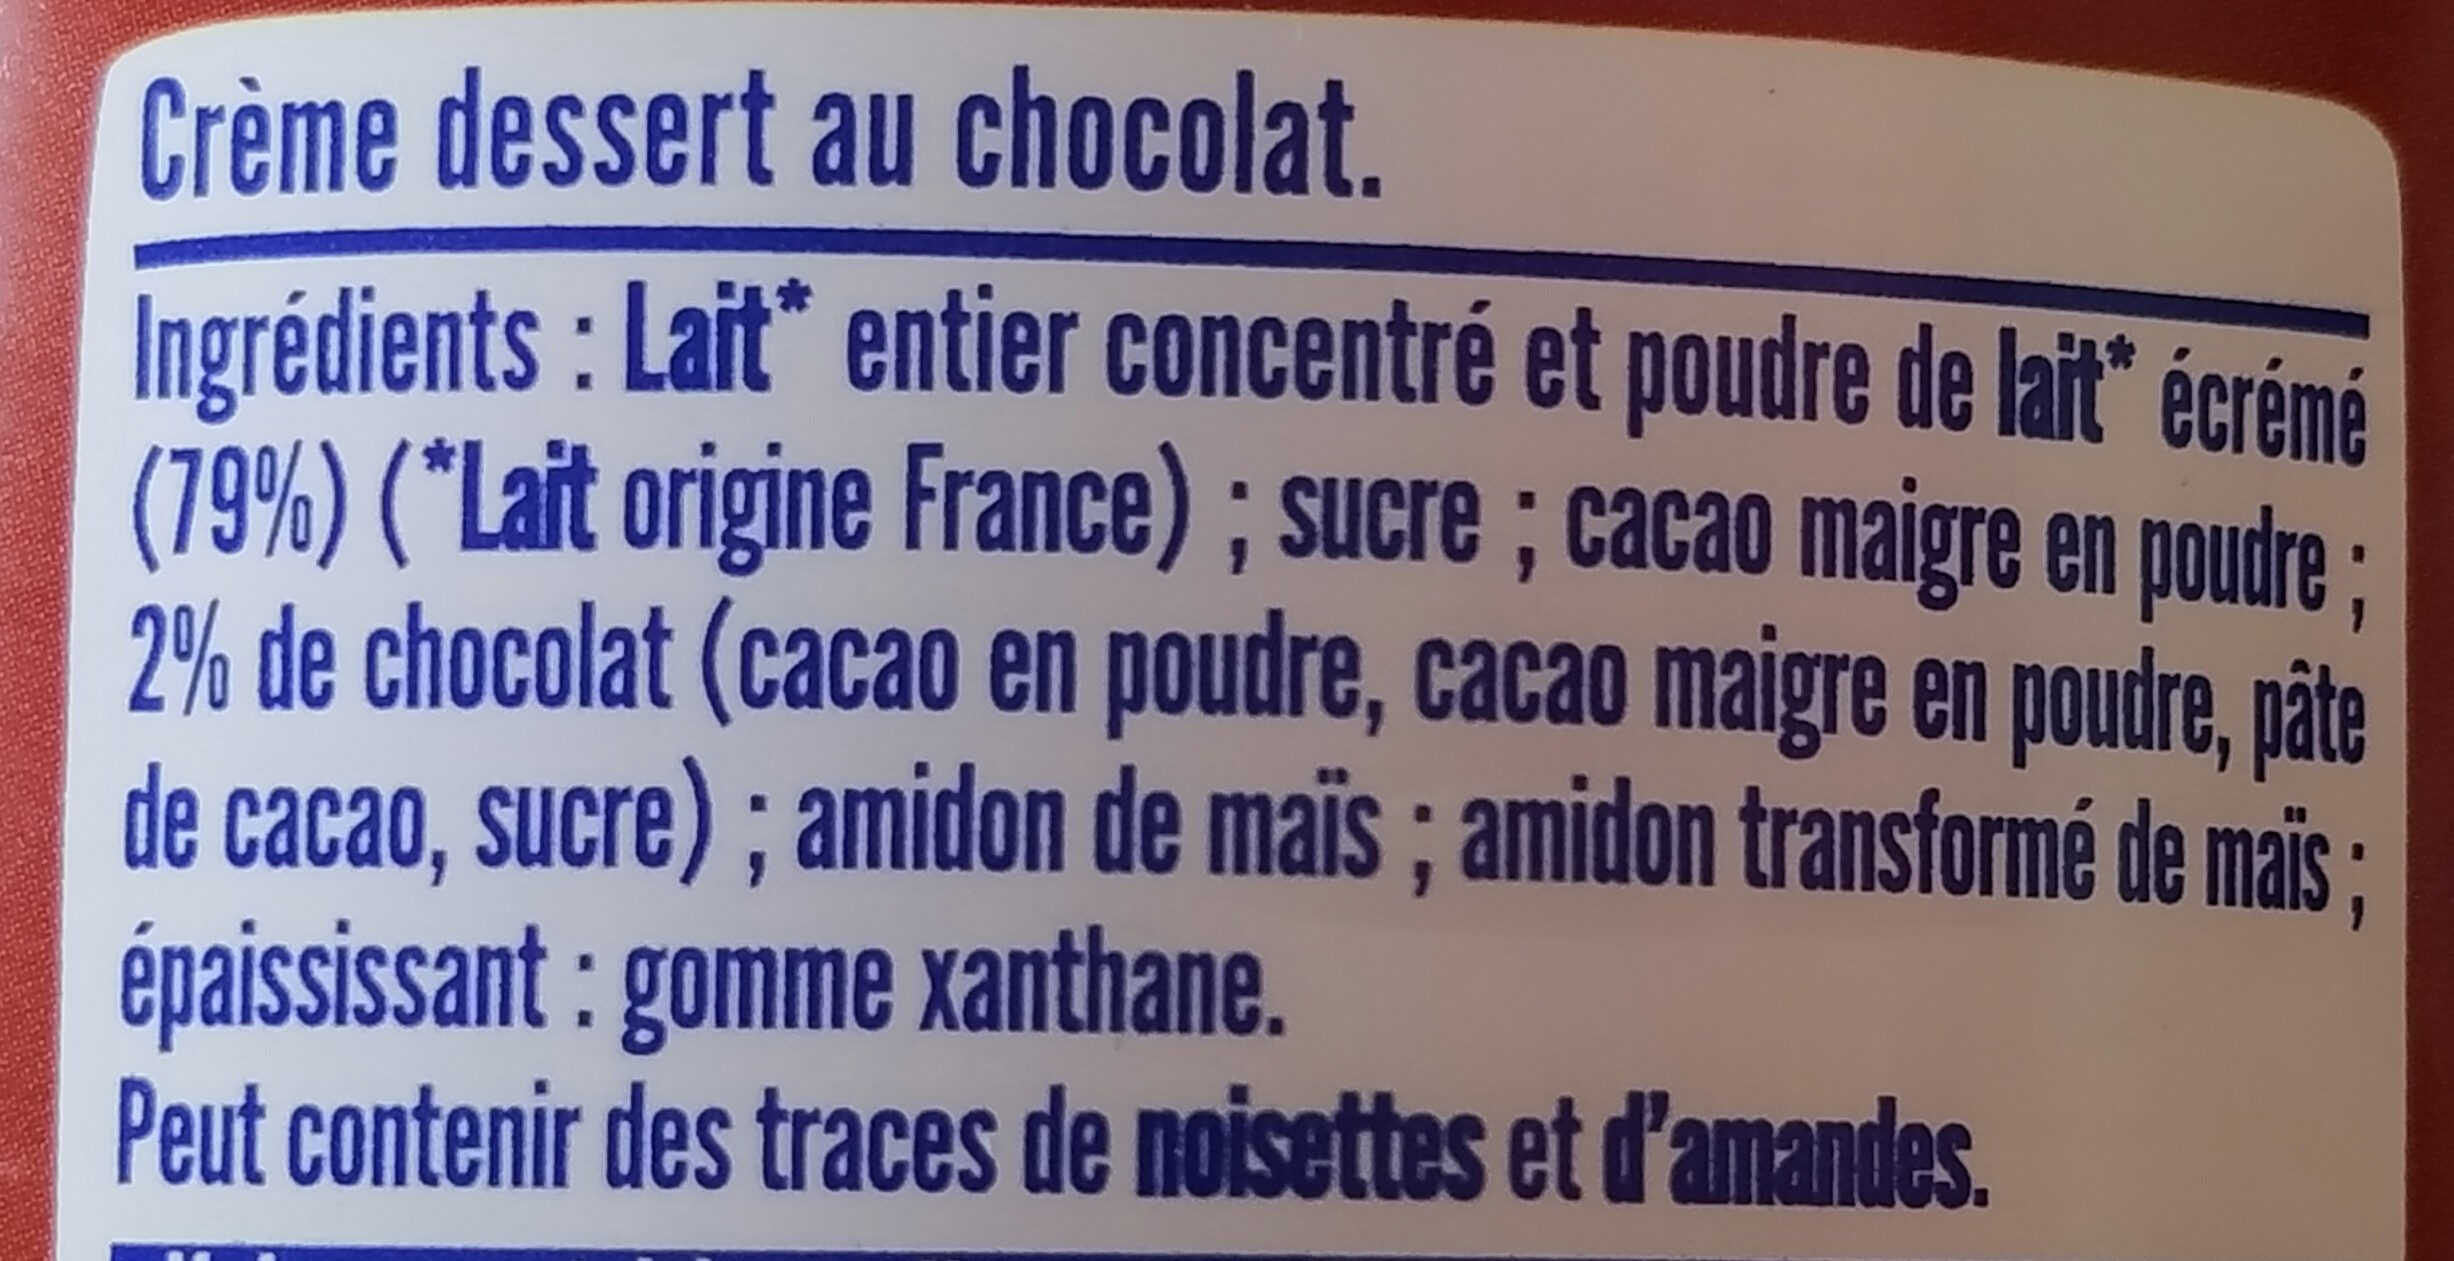 MONT BLANC Crème dessert Boîte Chocolat 570g - Ingrédients